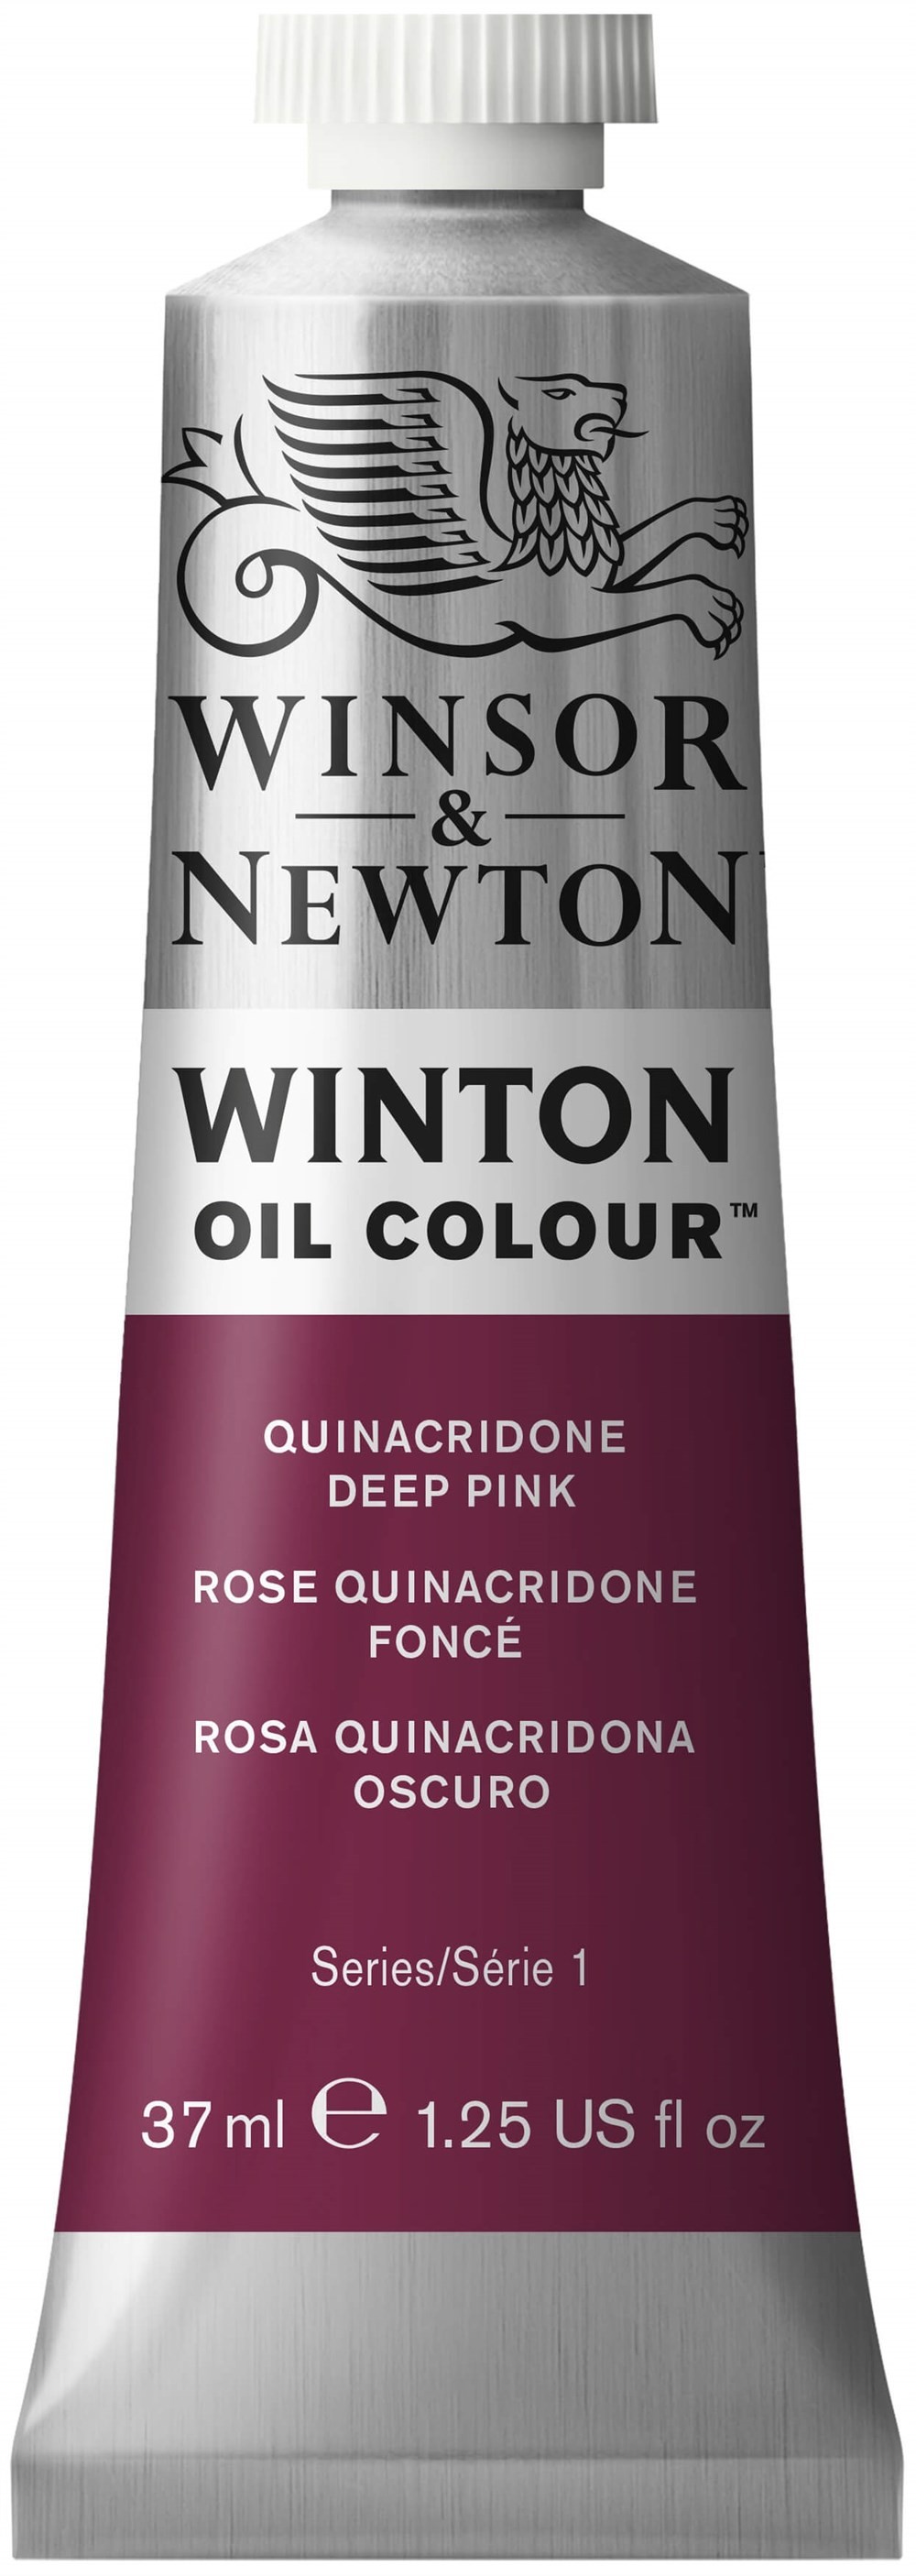 Winsor & Newton Winton Yağlı Boya 37ml Quniacridone Deep Pink